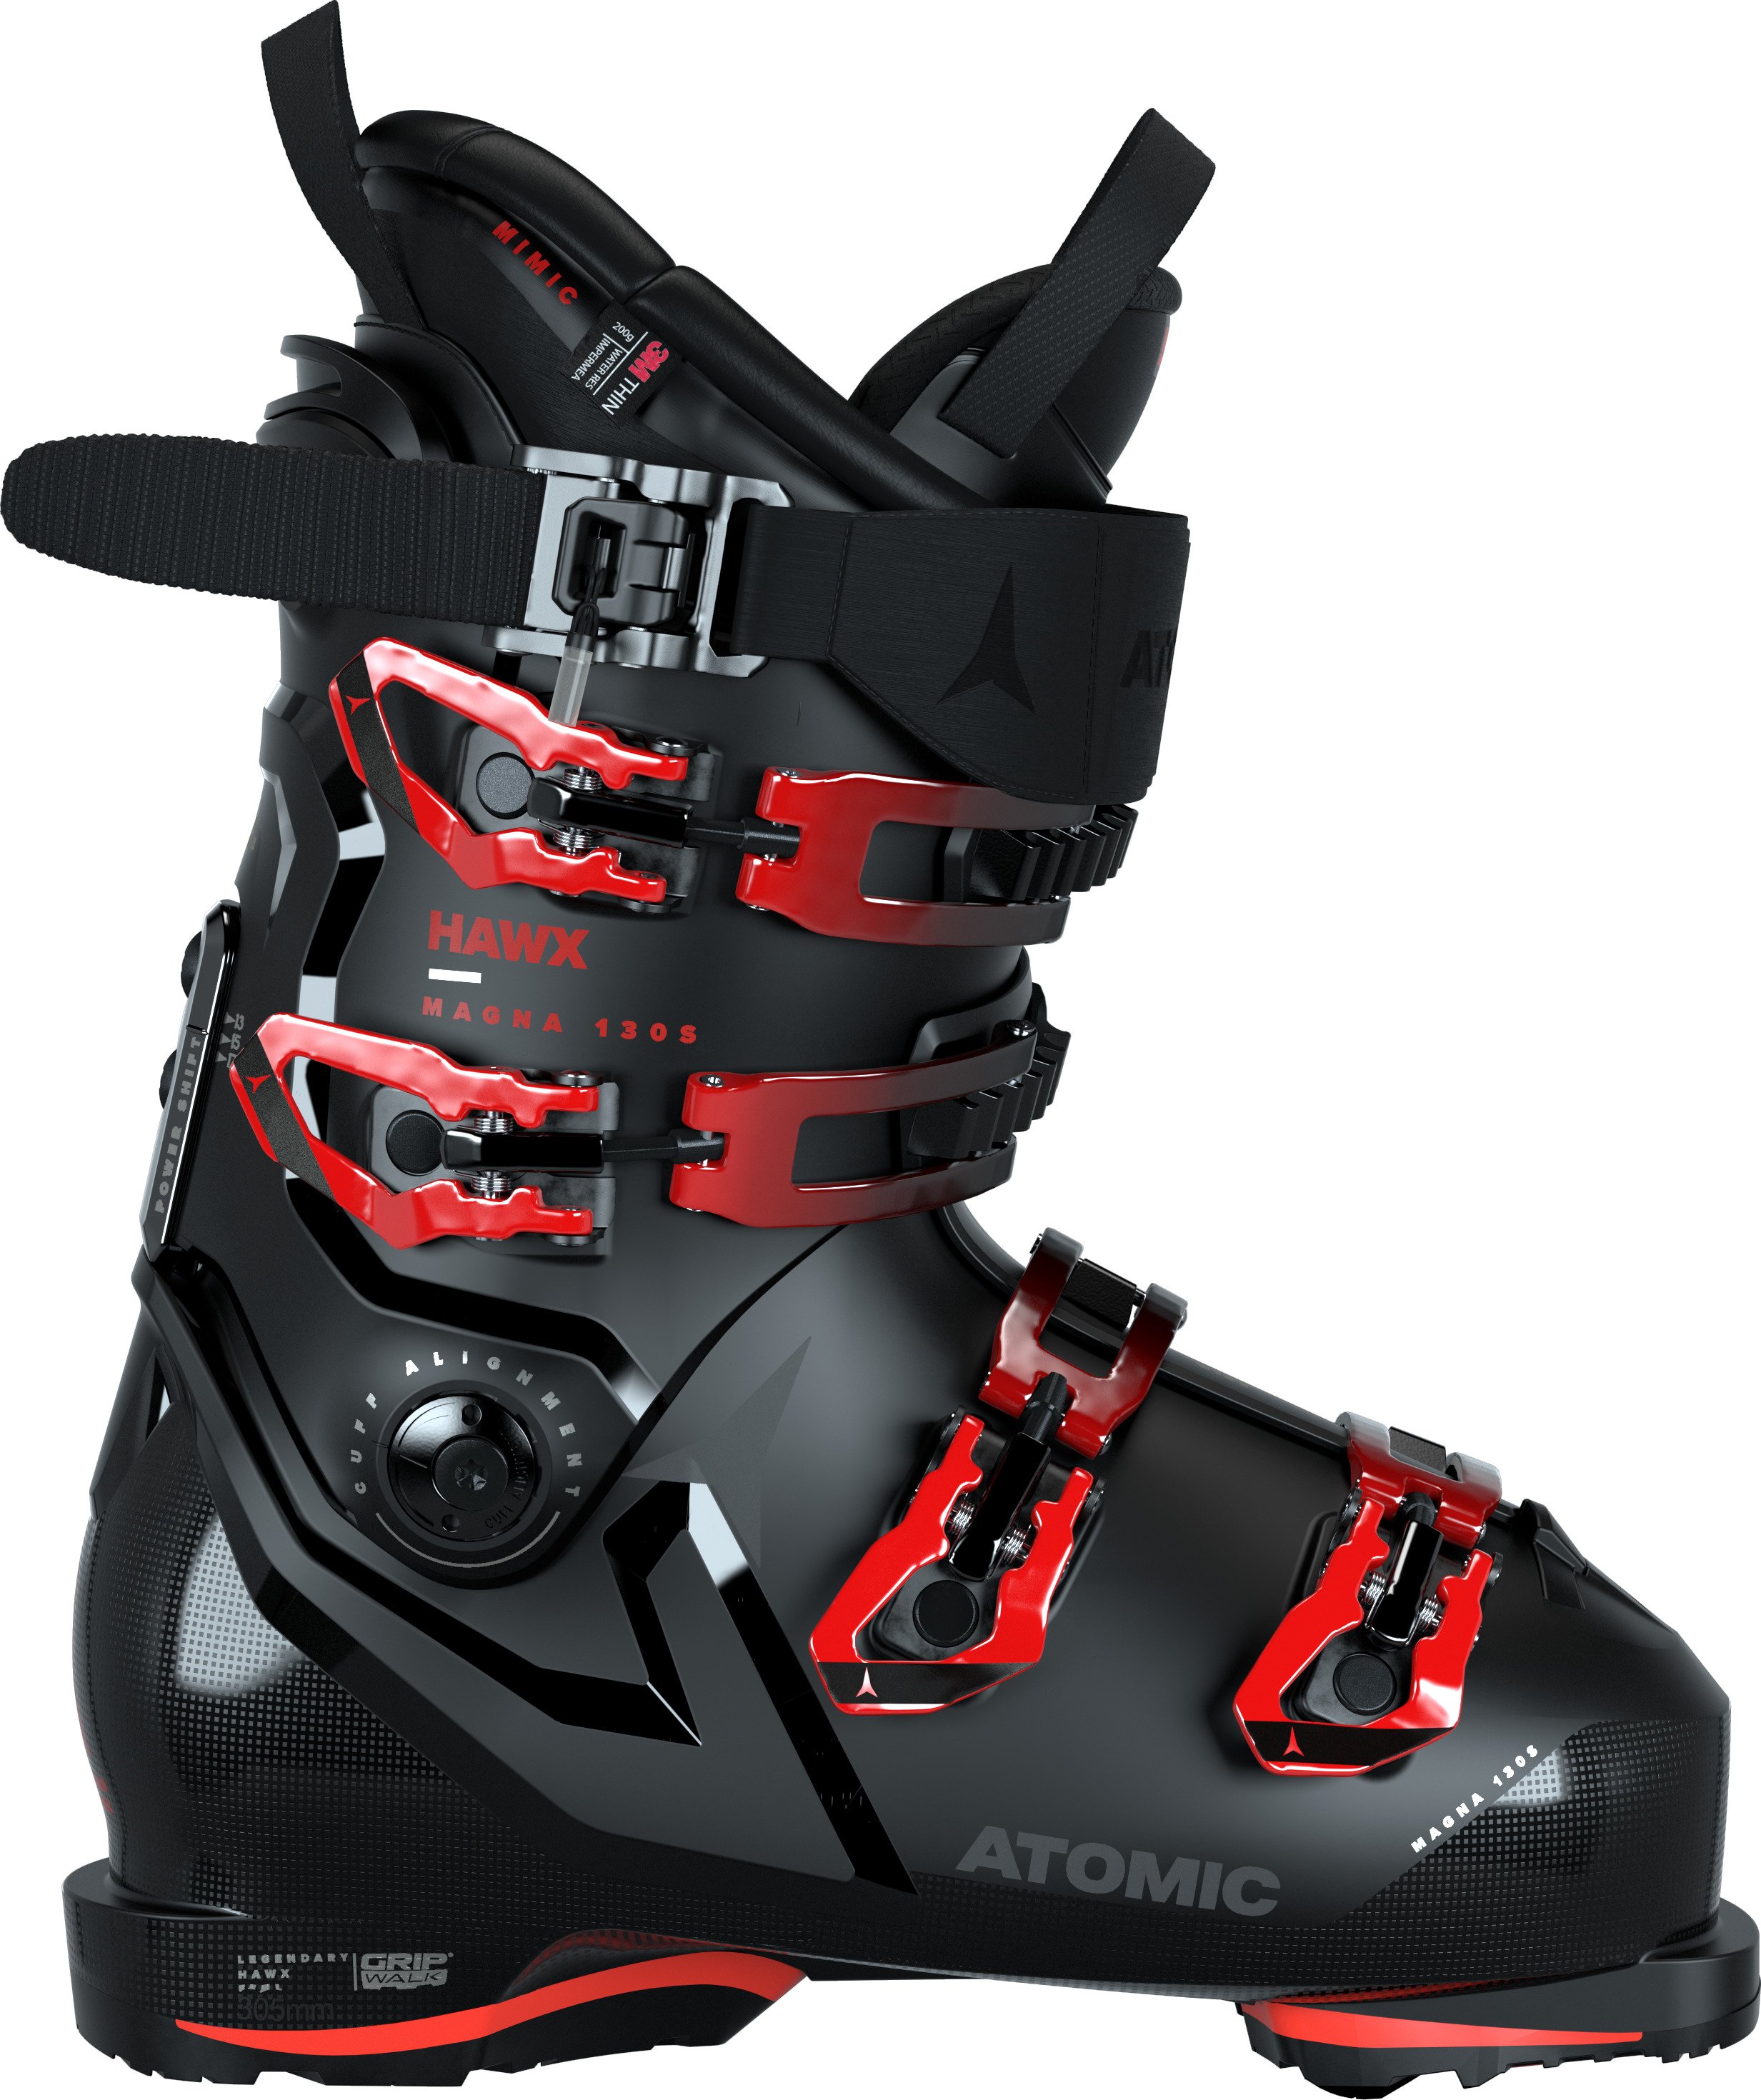 zo lont voordat Skischoenen kopen doe je online bij Duijvestein Winterstore